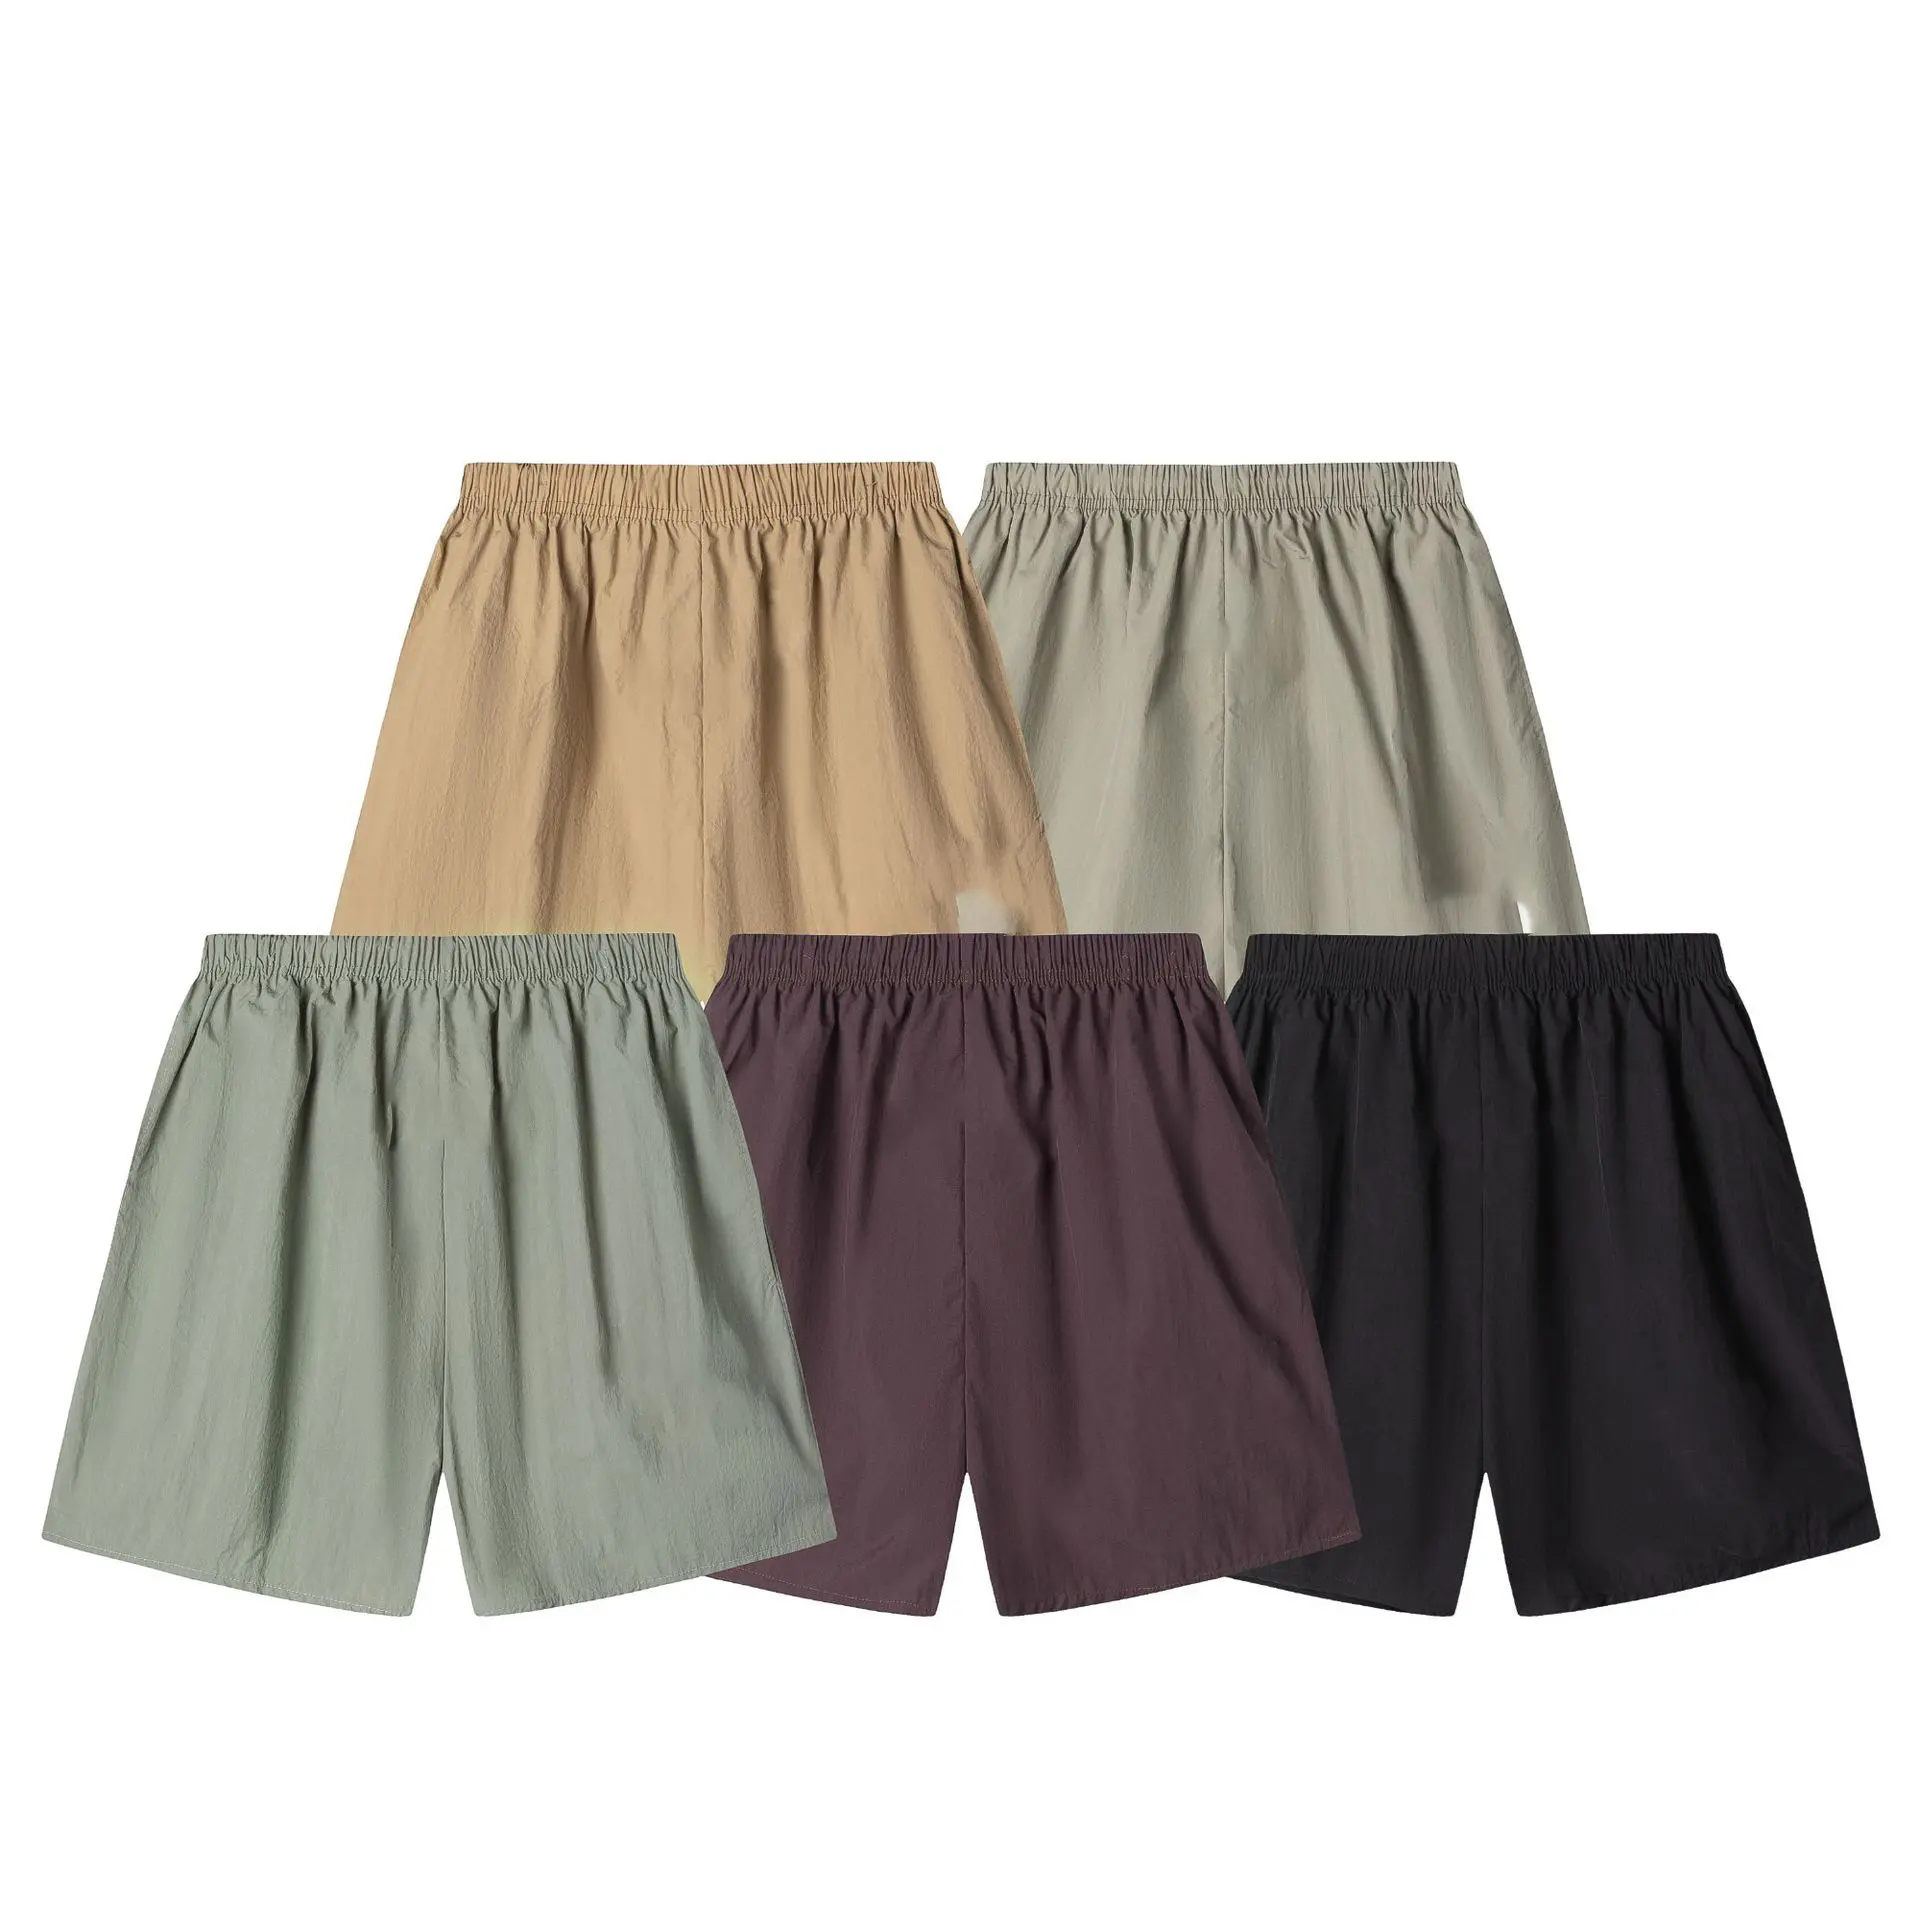 Oem logotipo personalizado Shorts masculinos novo FOG linha dupla shorts com estampa de letras essenciais para o verão que são unissex e venham